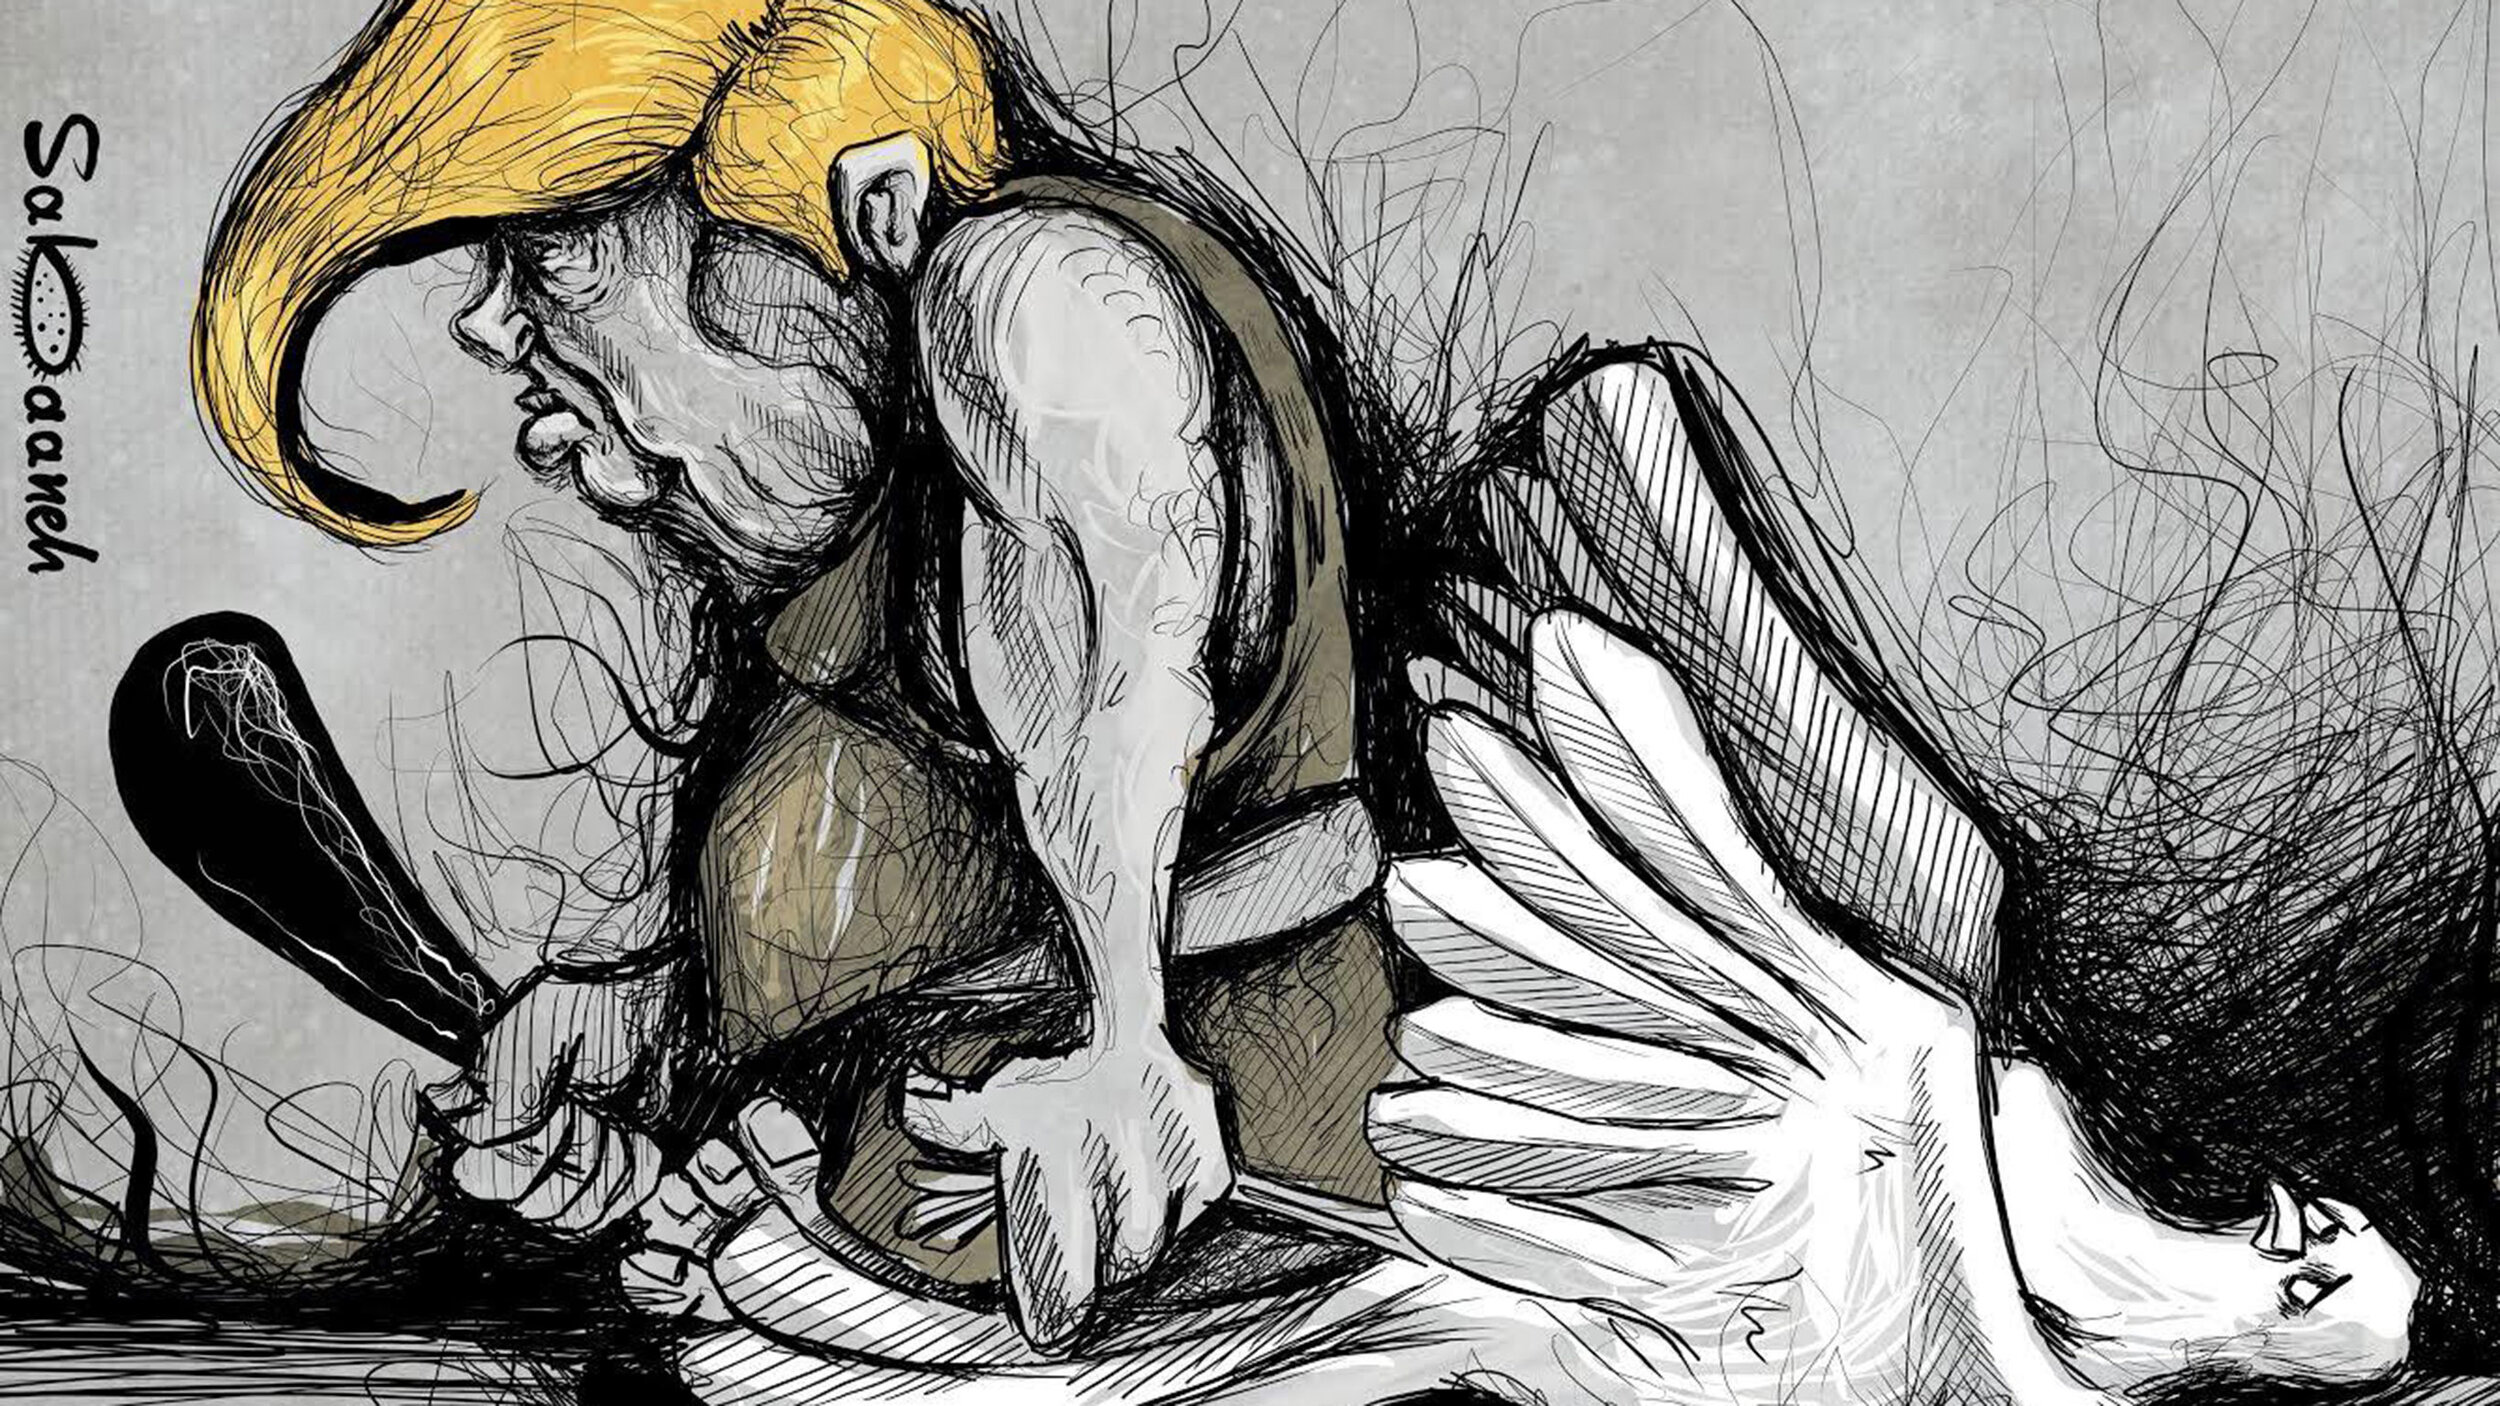 ترامب يدمر الديمقراطية الأمريكية, بقلم رسام الكاريكاتير الفلسطيني محمد سبانيه